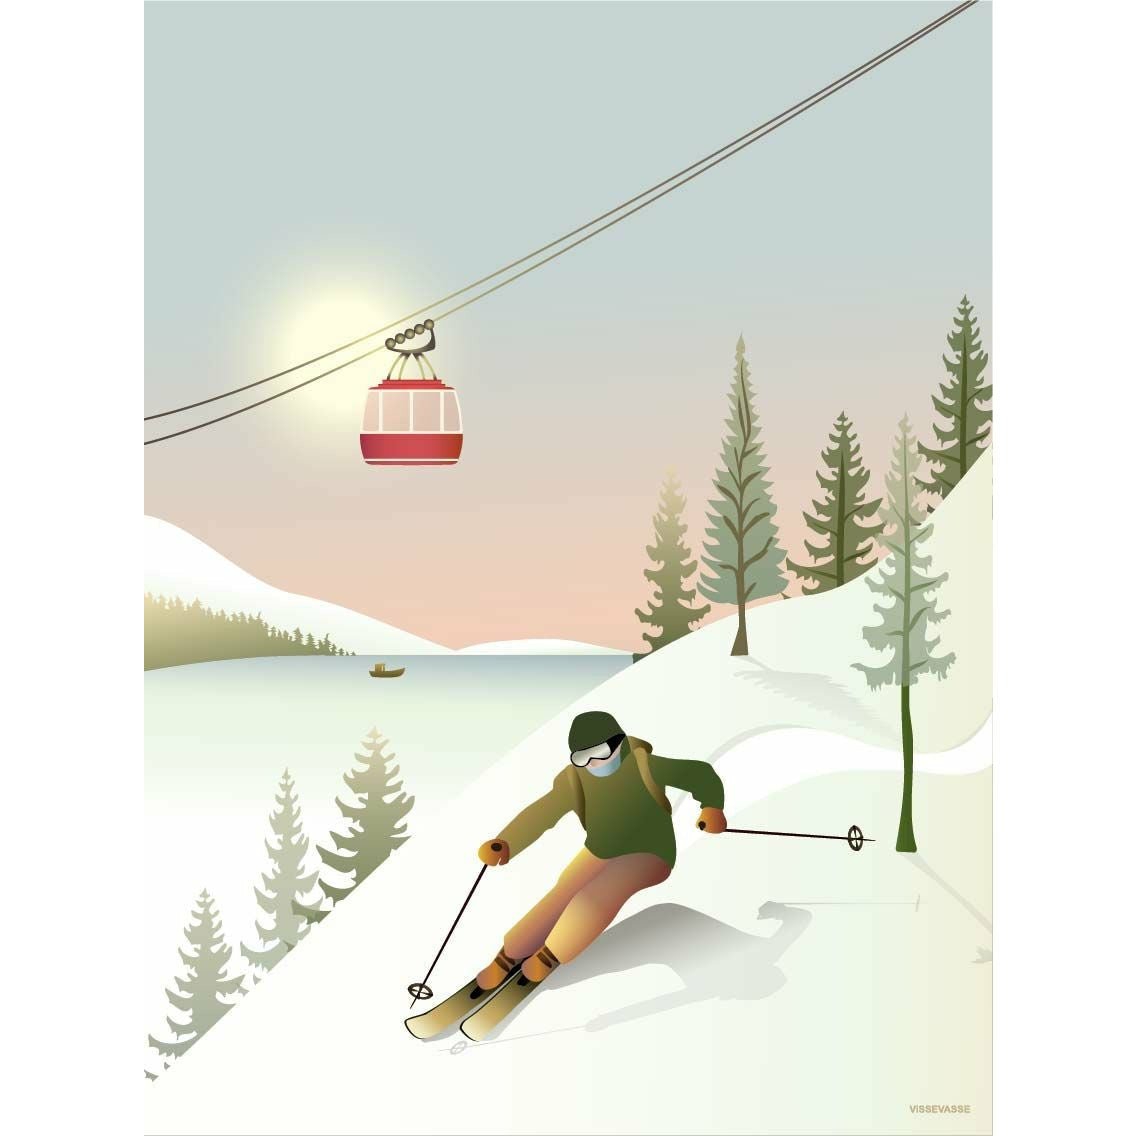 Vissevasse Offpiste Skiing Poster, 50x70 Cm